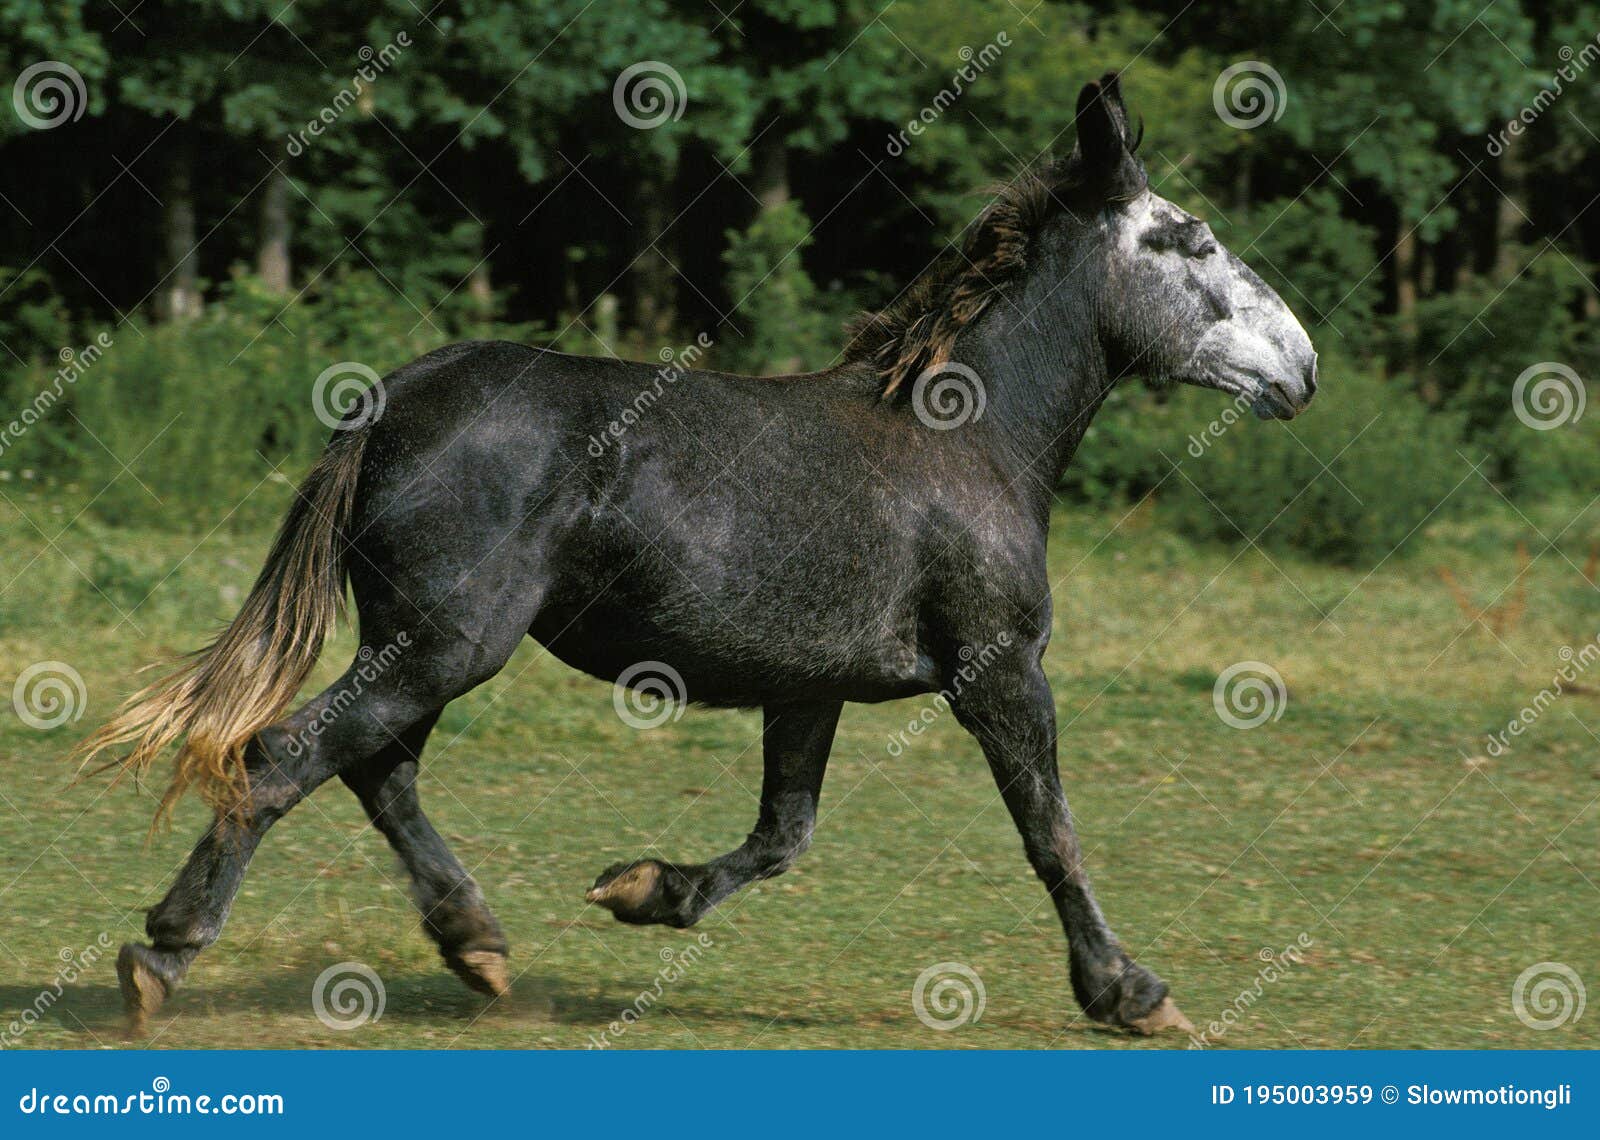 Male horse female donkey